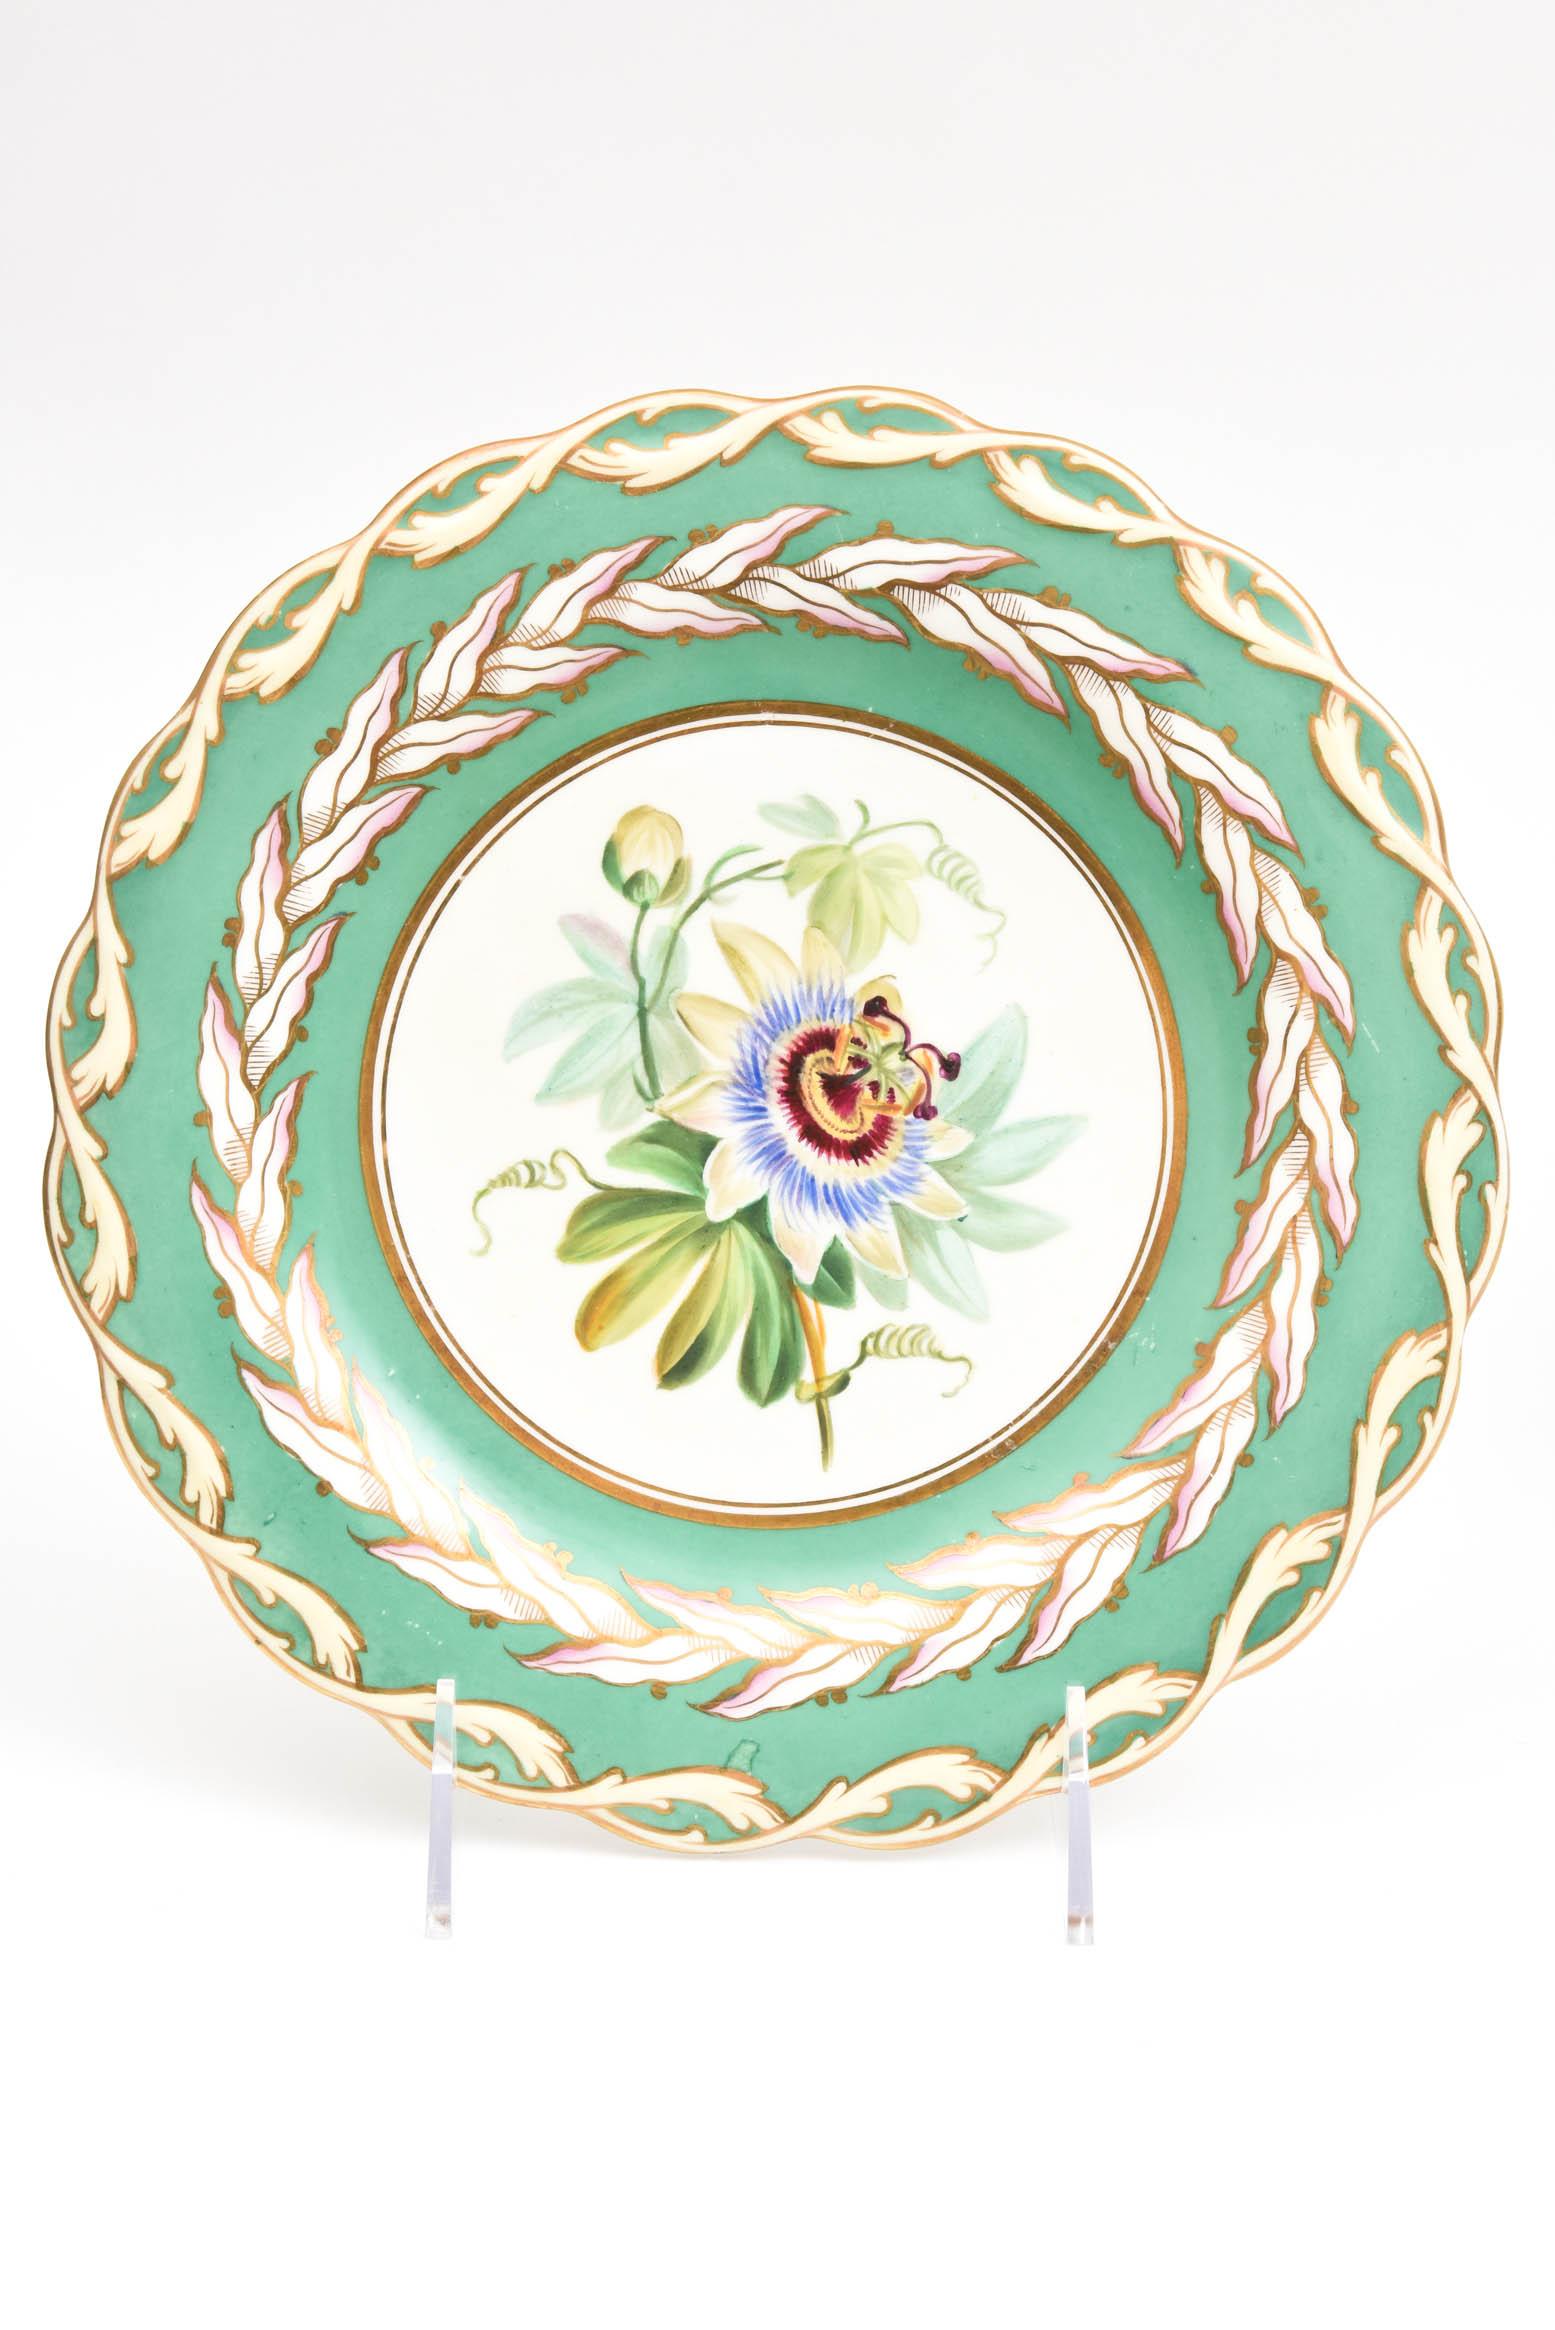 12 Antique Botanical Plates, English Porcelain 19th Century Handpainted Florals 1